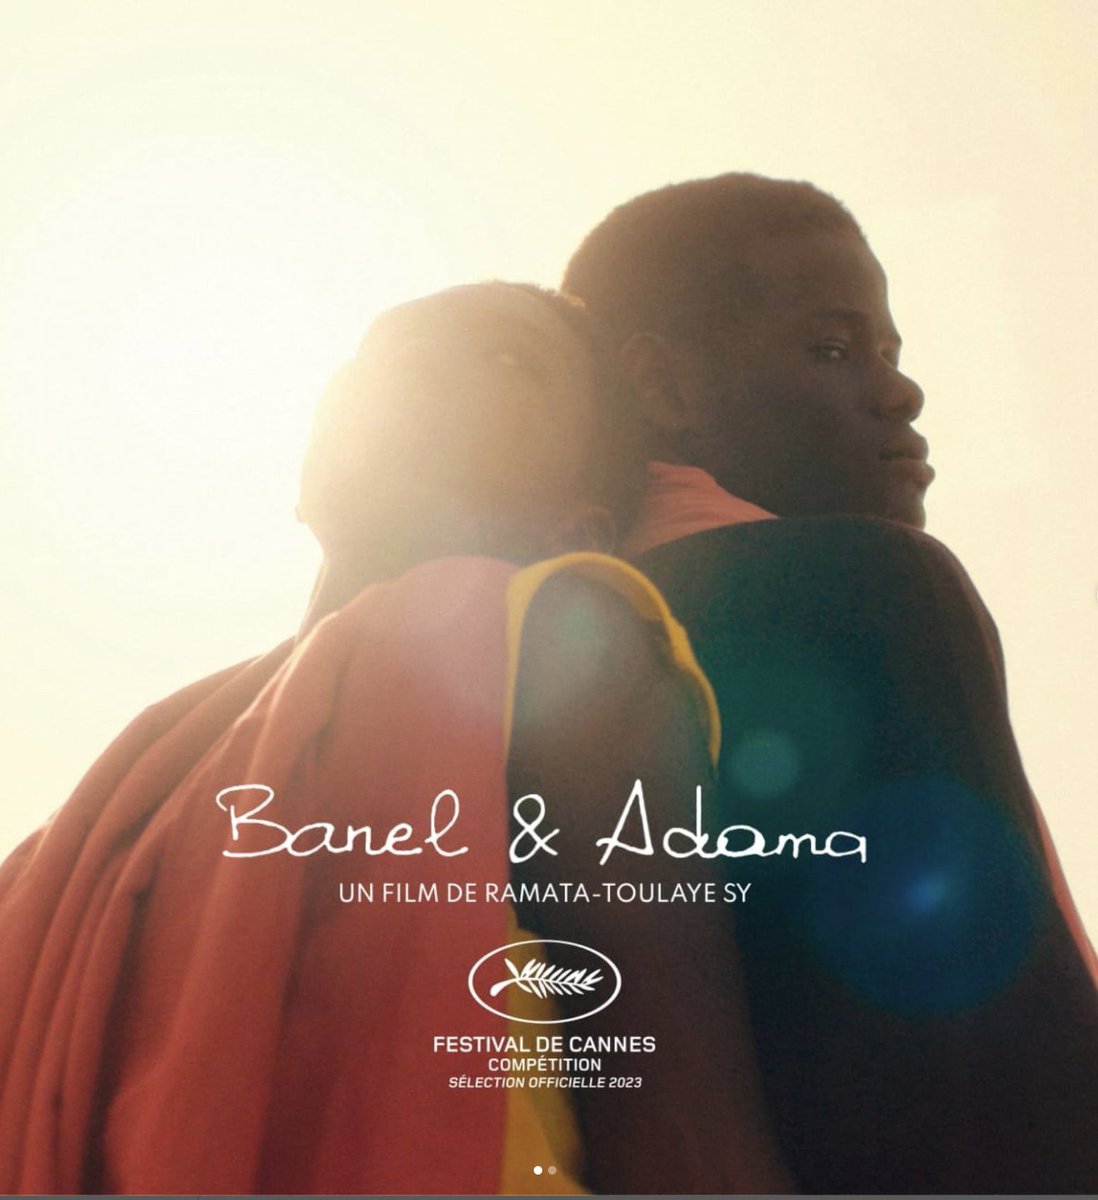 Banel & Adama de Ramata-Toulaye Sy, la plus belle histoire d'amour que vous vivrez cet été ❤️

Le 30 août au cinéma

#Baneletadama